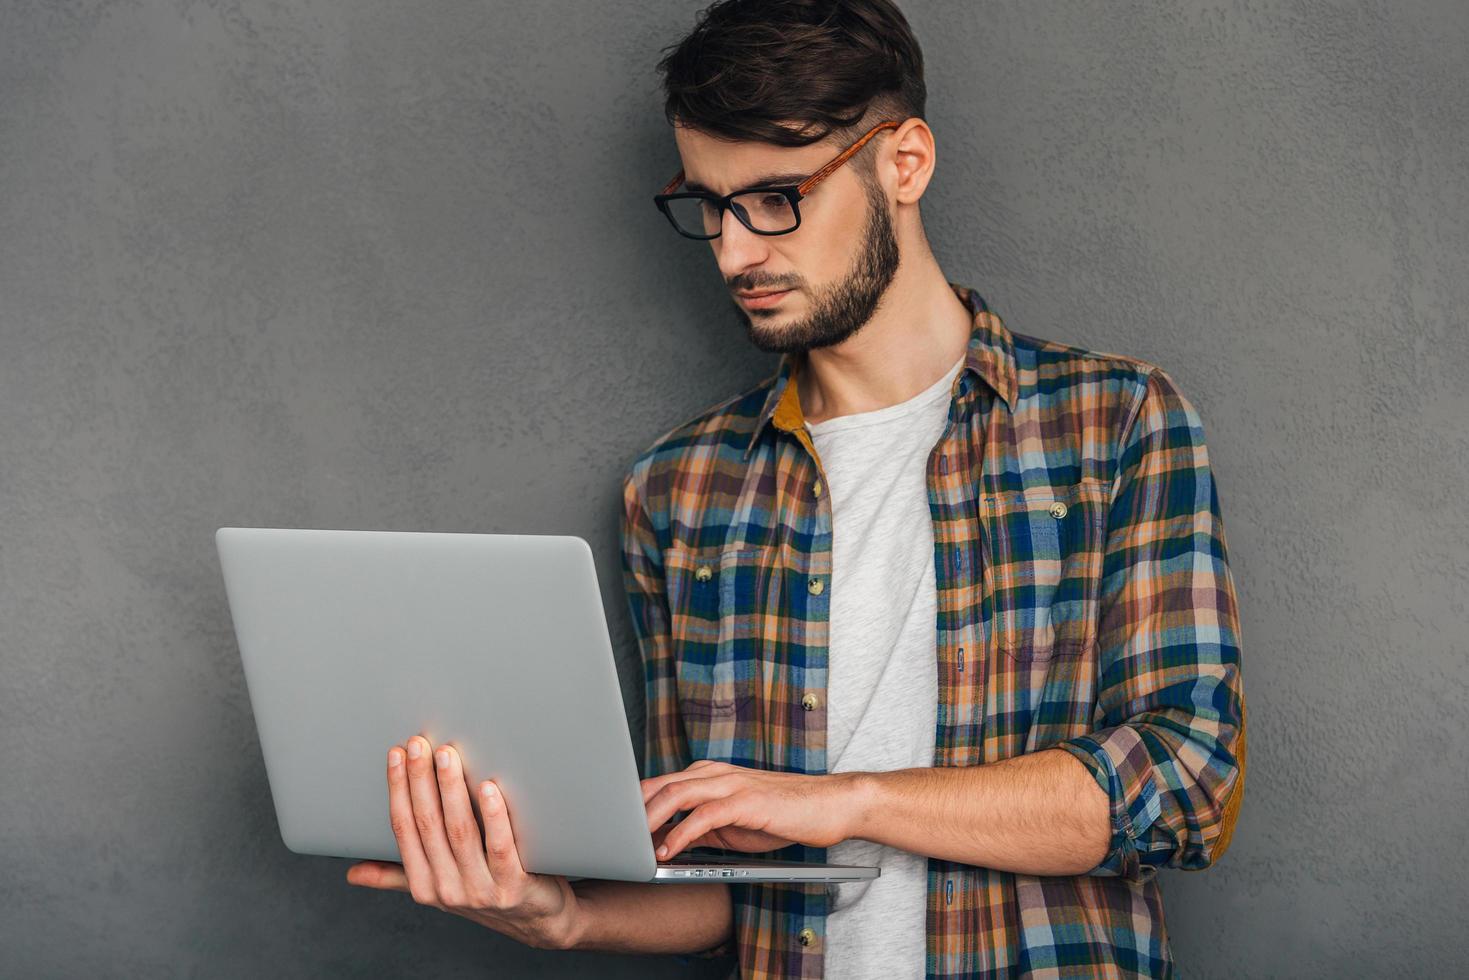 Überprüfung aller Updates. Selbstbewusster junger Mann, der seinen Laptop verwendet und konzentriert aussieht, während er vor grauem Hintergrund steht foto